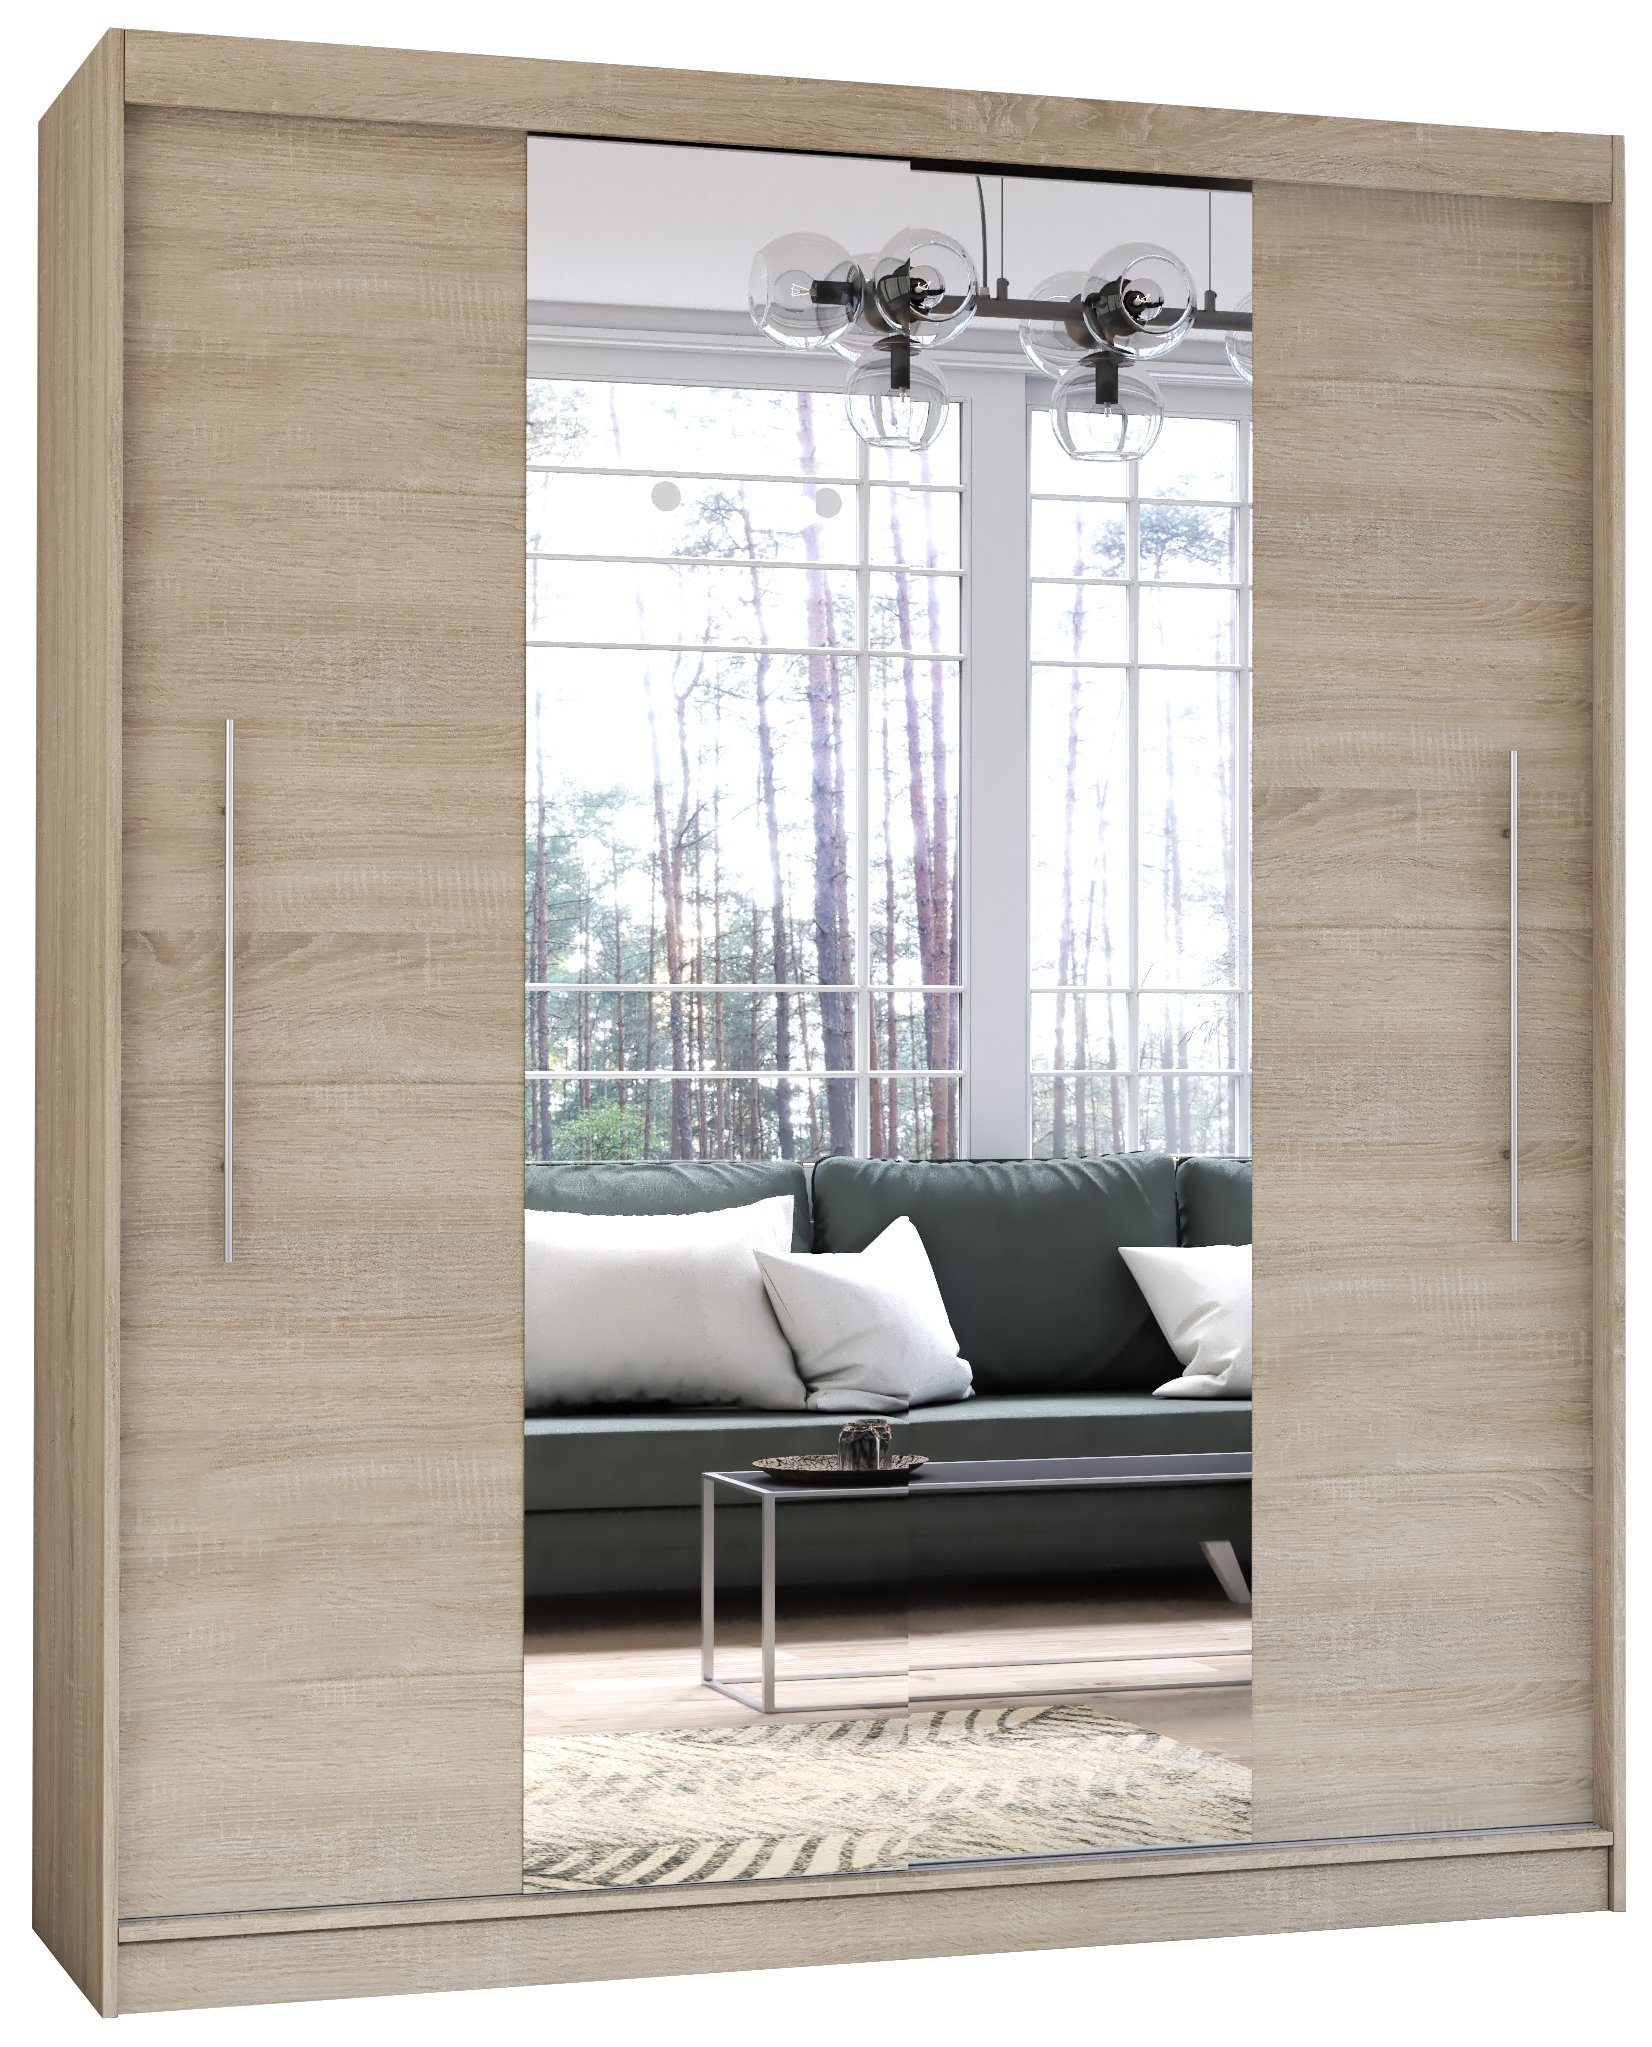 Polini Home Schwebetürenschrank Prime Comfort 204x218x58 cm Spiegel mittig  in Eiche-Weiß | Schwebetürenschränke